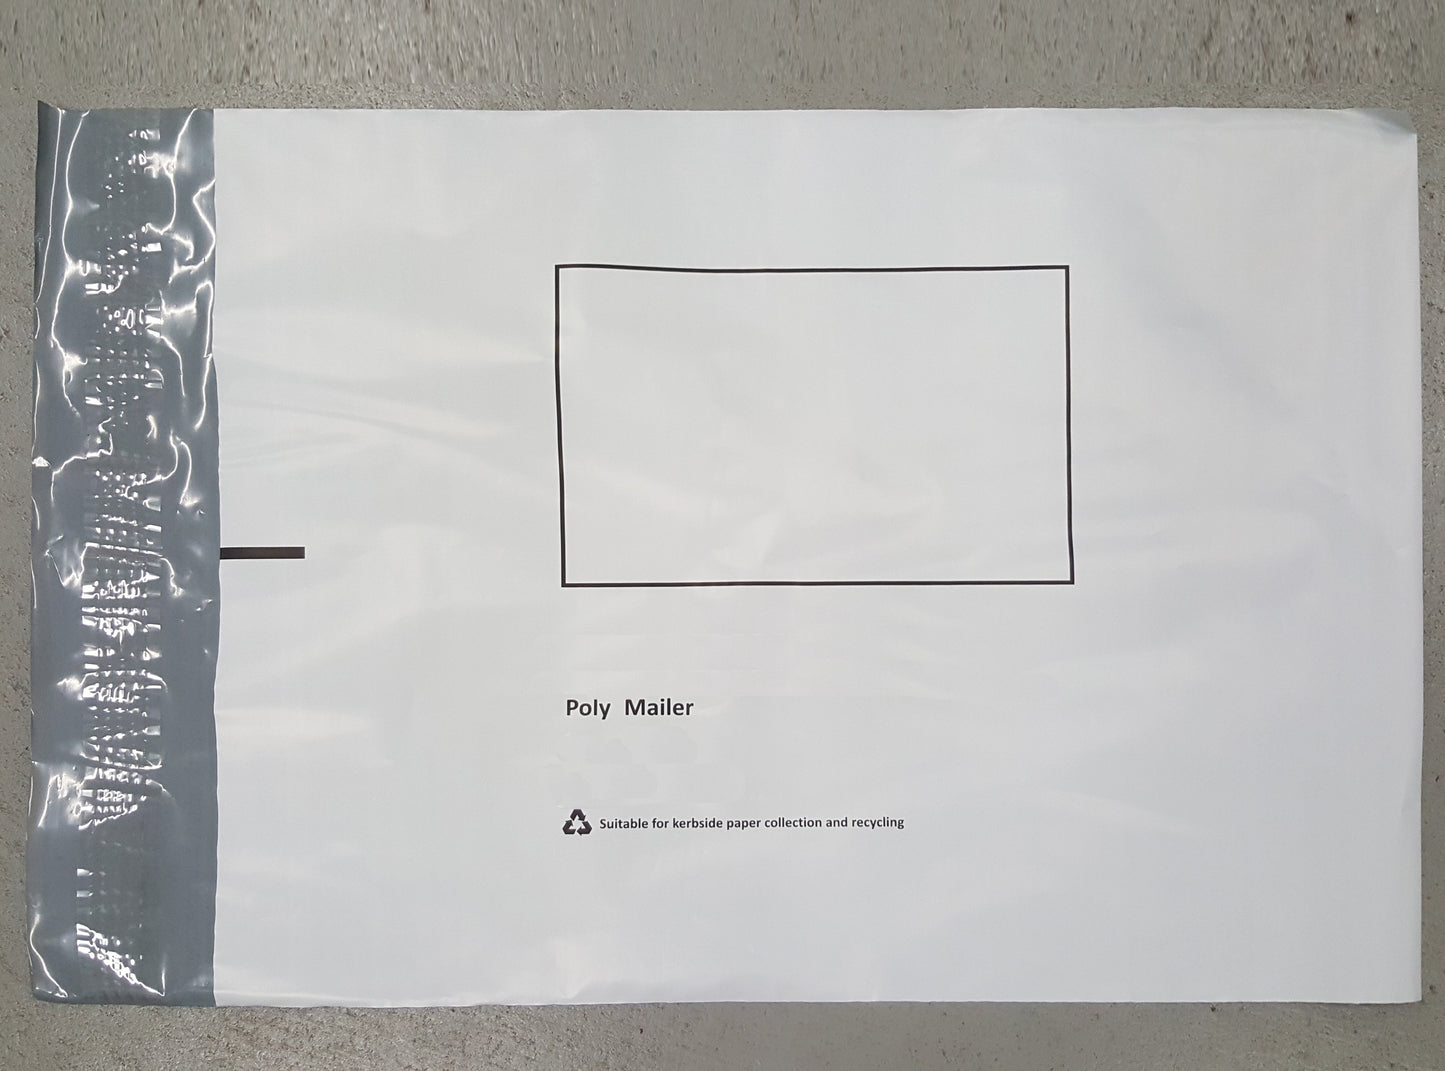 Courier Bags - White - 400x500mm - 500 per box - $39.40 per 100